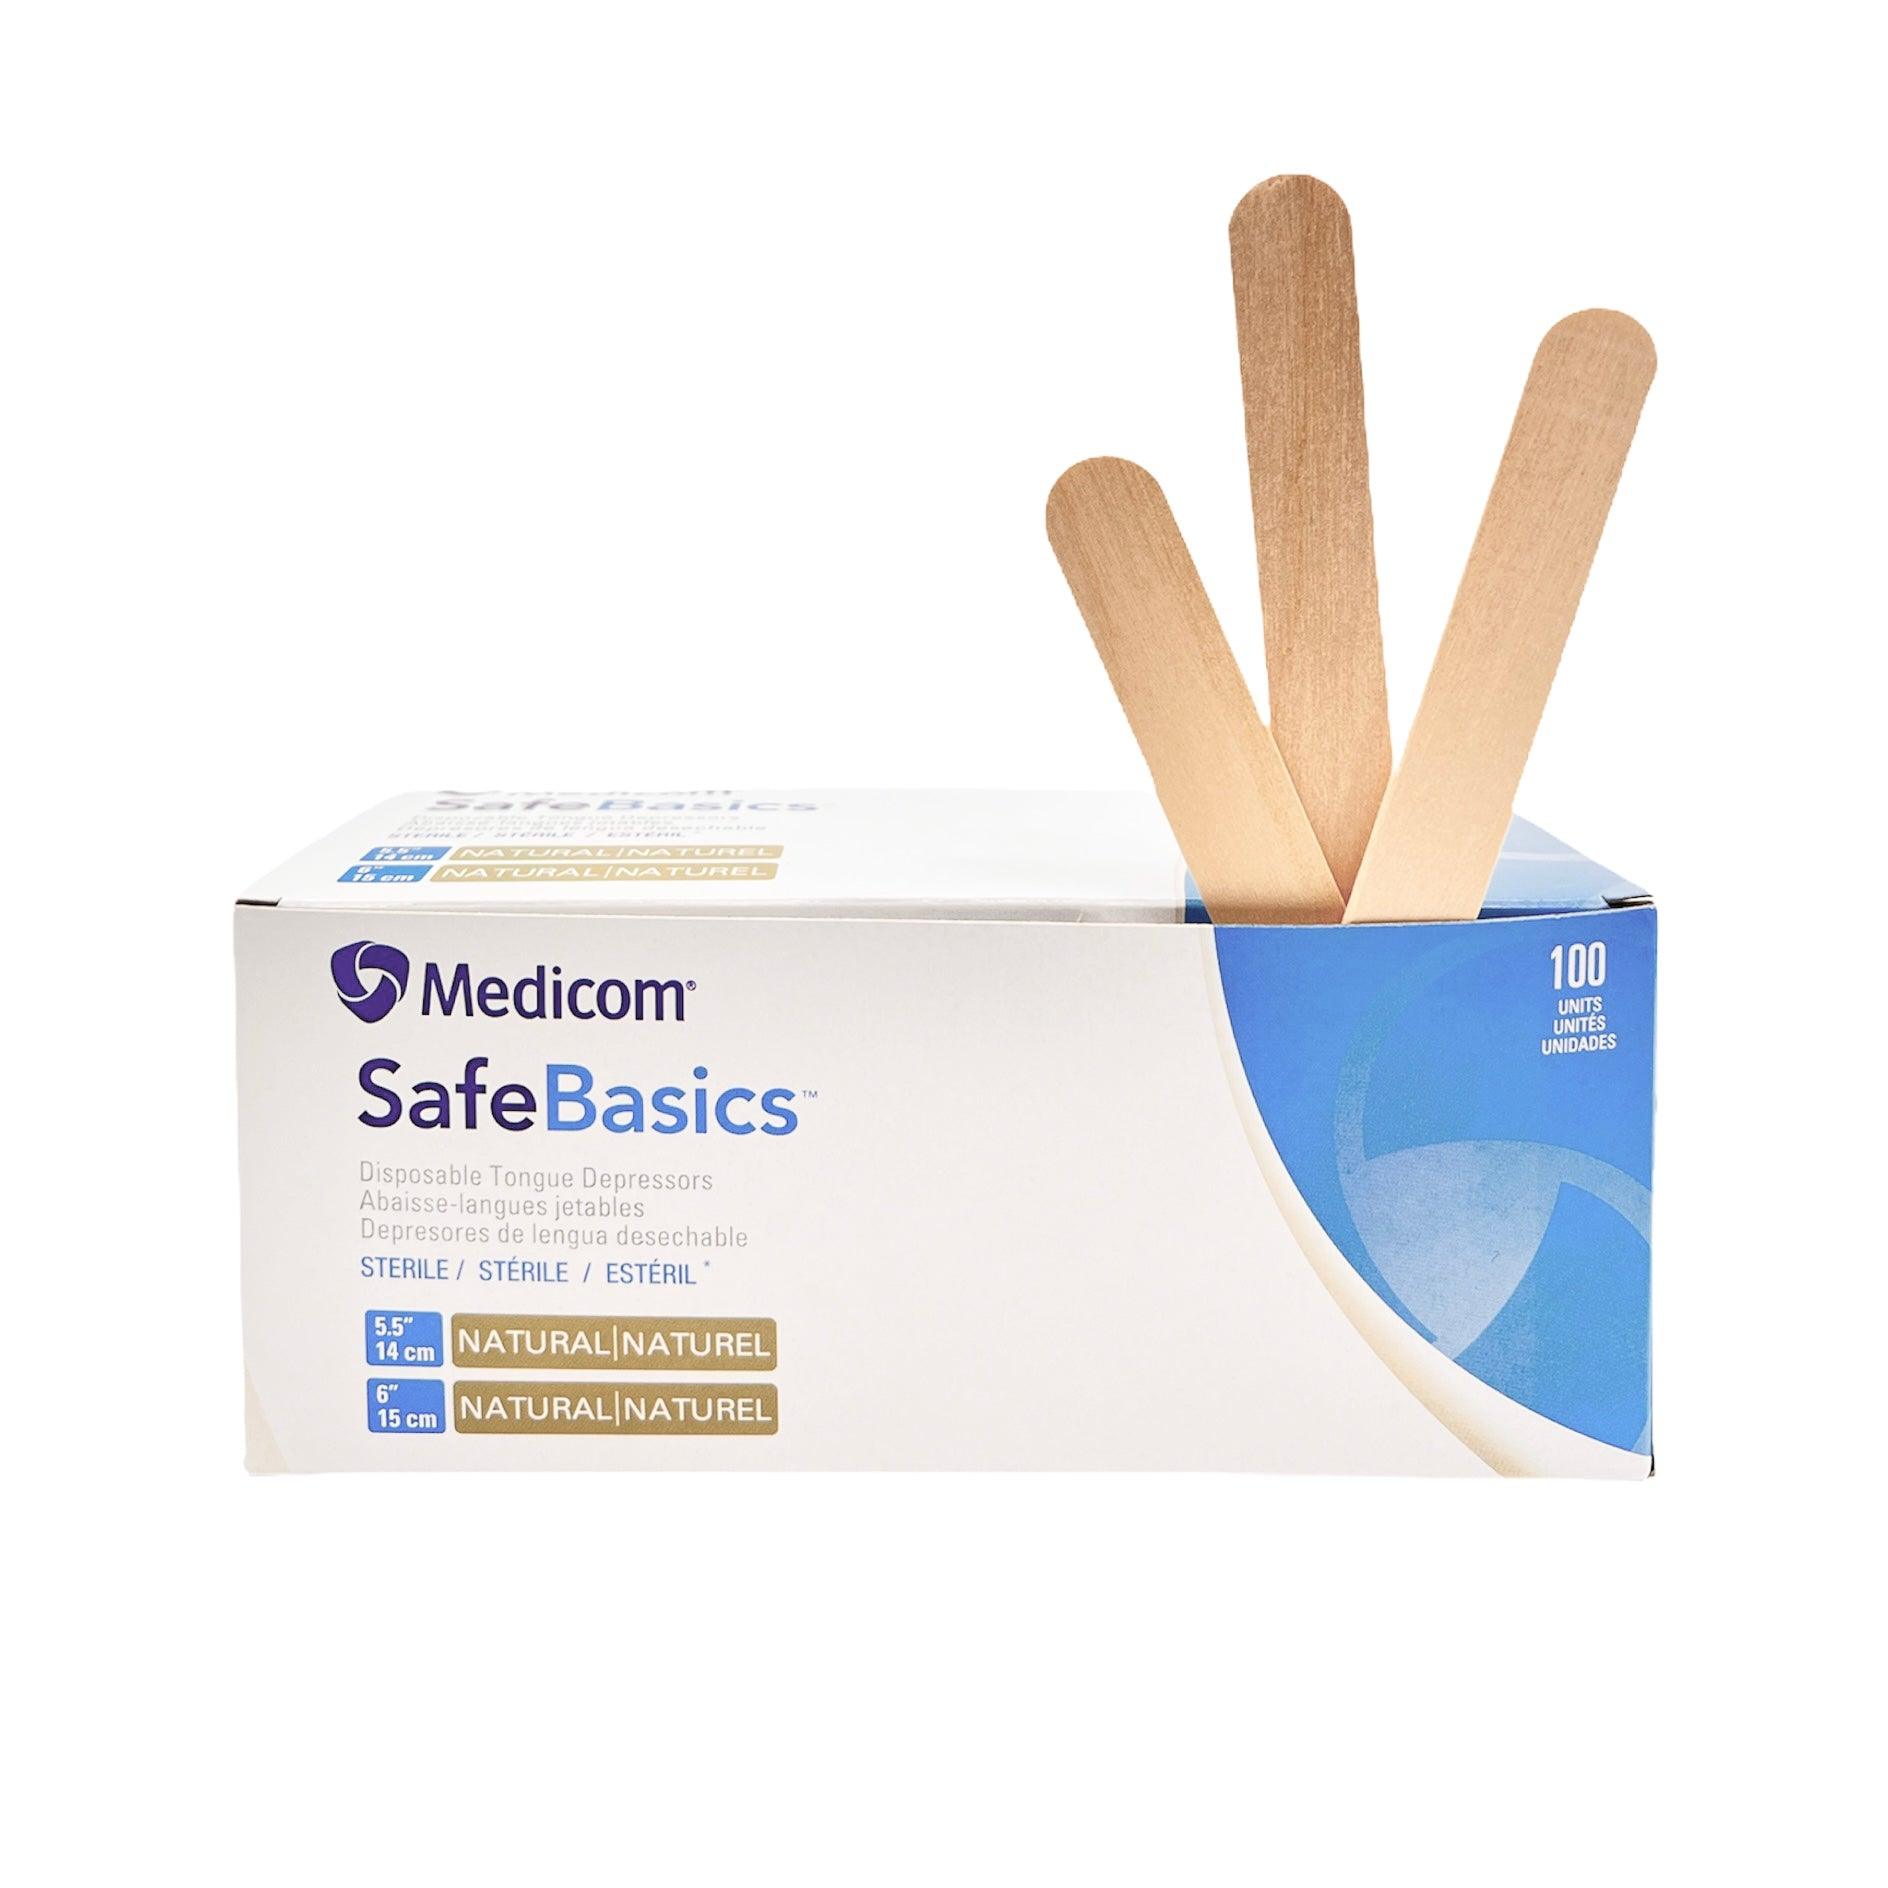 Medicom Safe Basic - Disposable Tongue Depressor